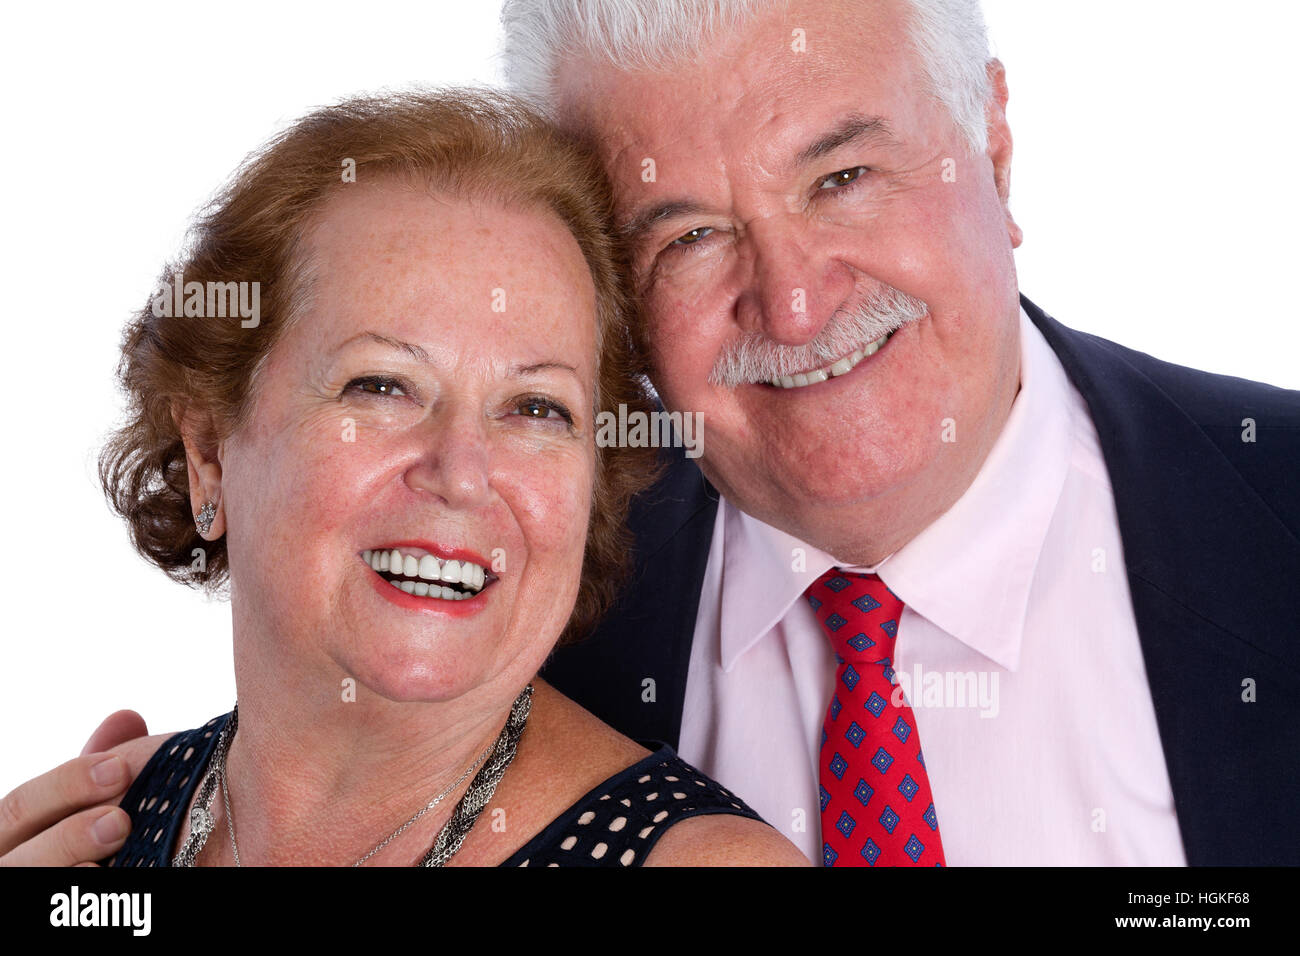 Porträt von glücklich älteres paar lächelnd zusammen in intelligente Kleidung auf weißem Hintergrund Stockfoto